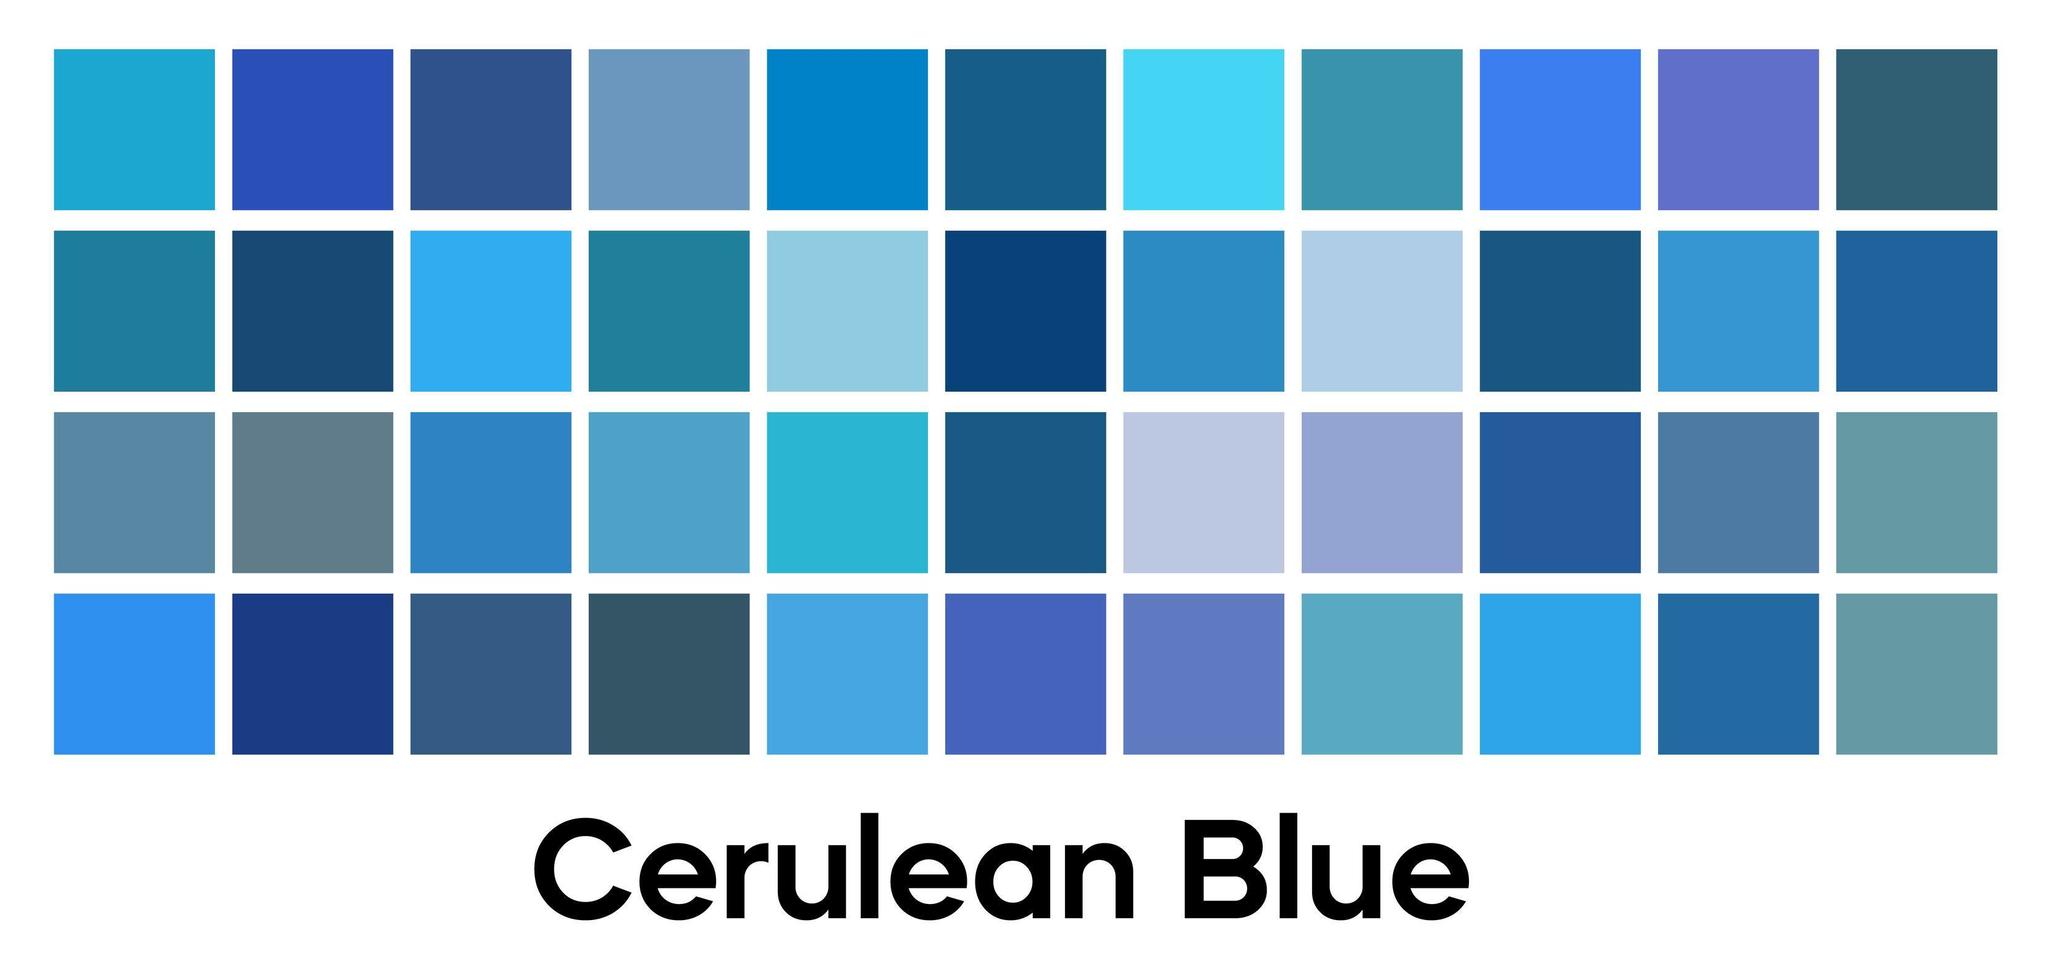 moderne blaue Farbe, Vektorpalettensatz. himmelblau-, indigo- und türkisfarbene Vorlagensammlung. vektor